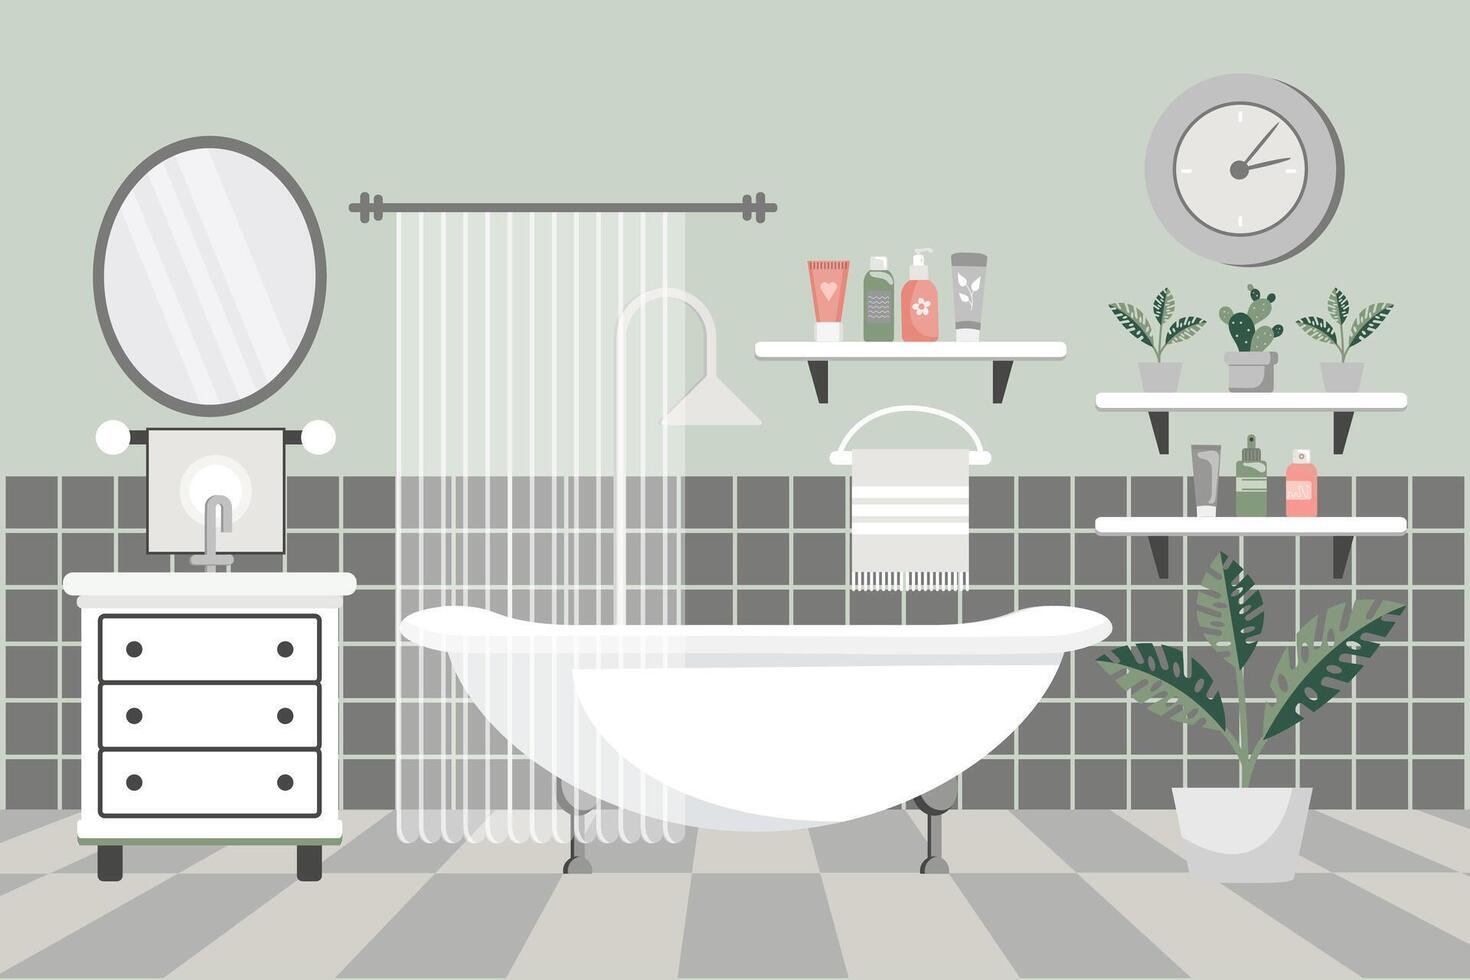 acolhedor banheiro. banheiro interior com banheiro mobília, banheira, lavatório, toalhas, espelho, janela, casa plantas. plano ilustração. vetor